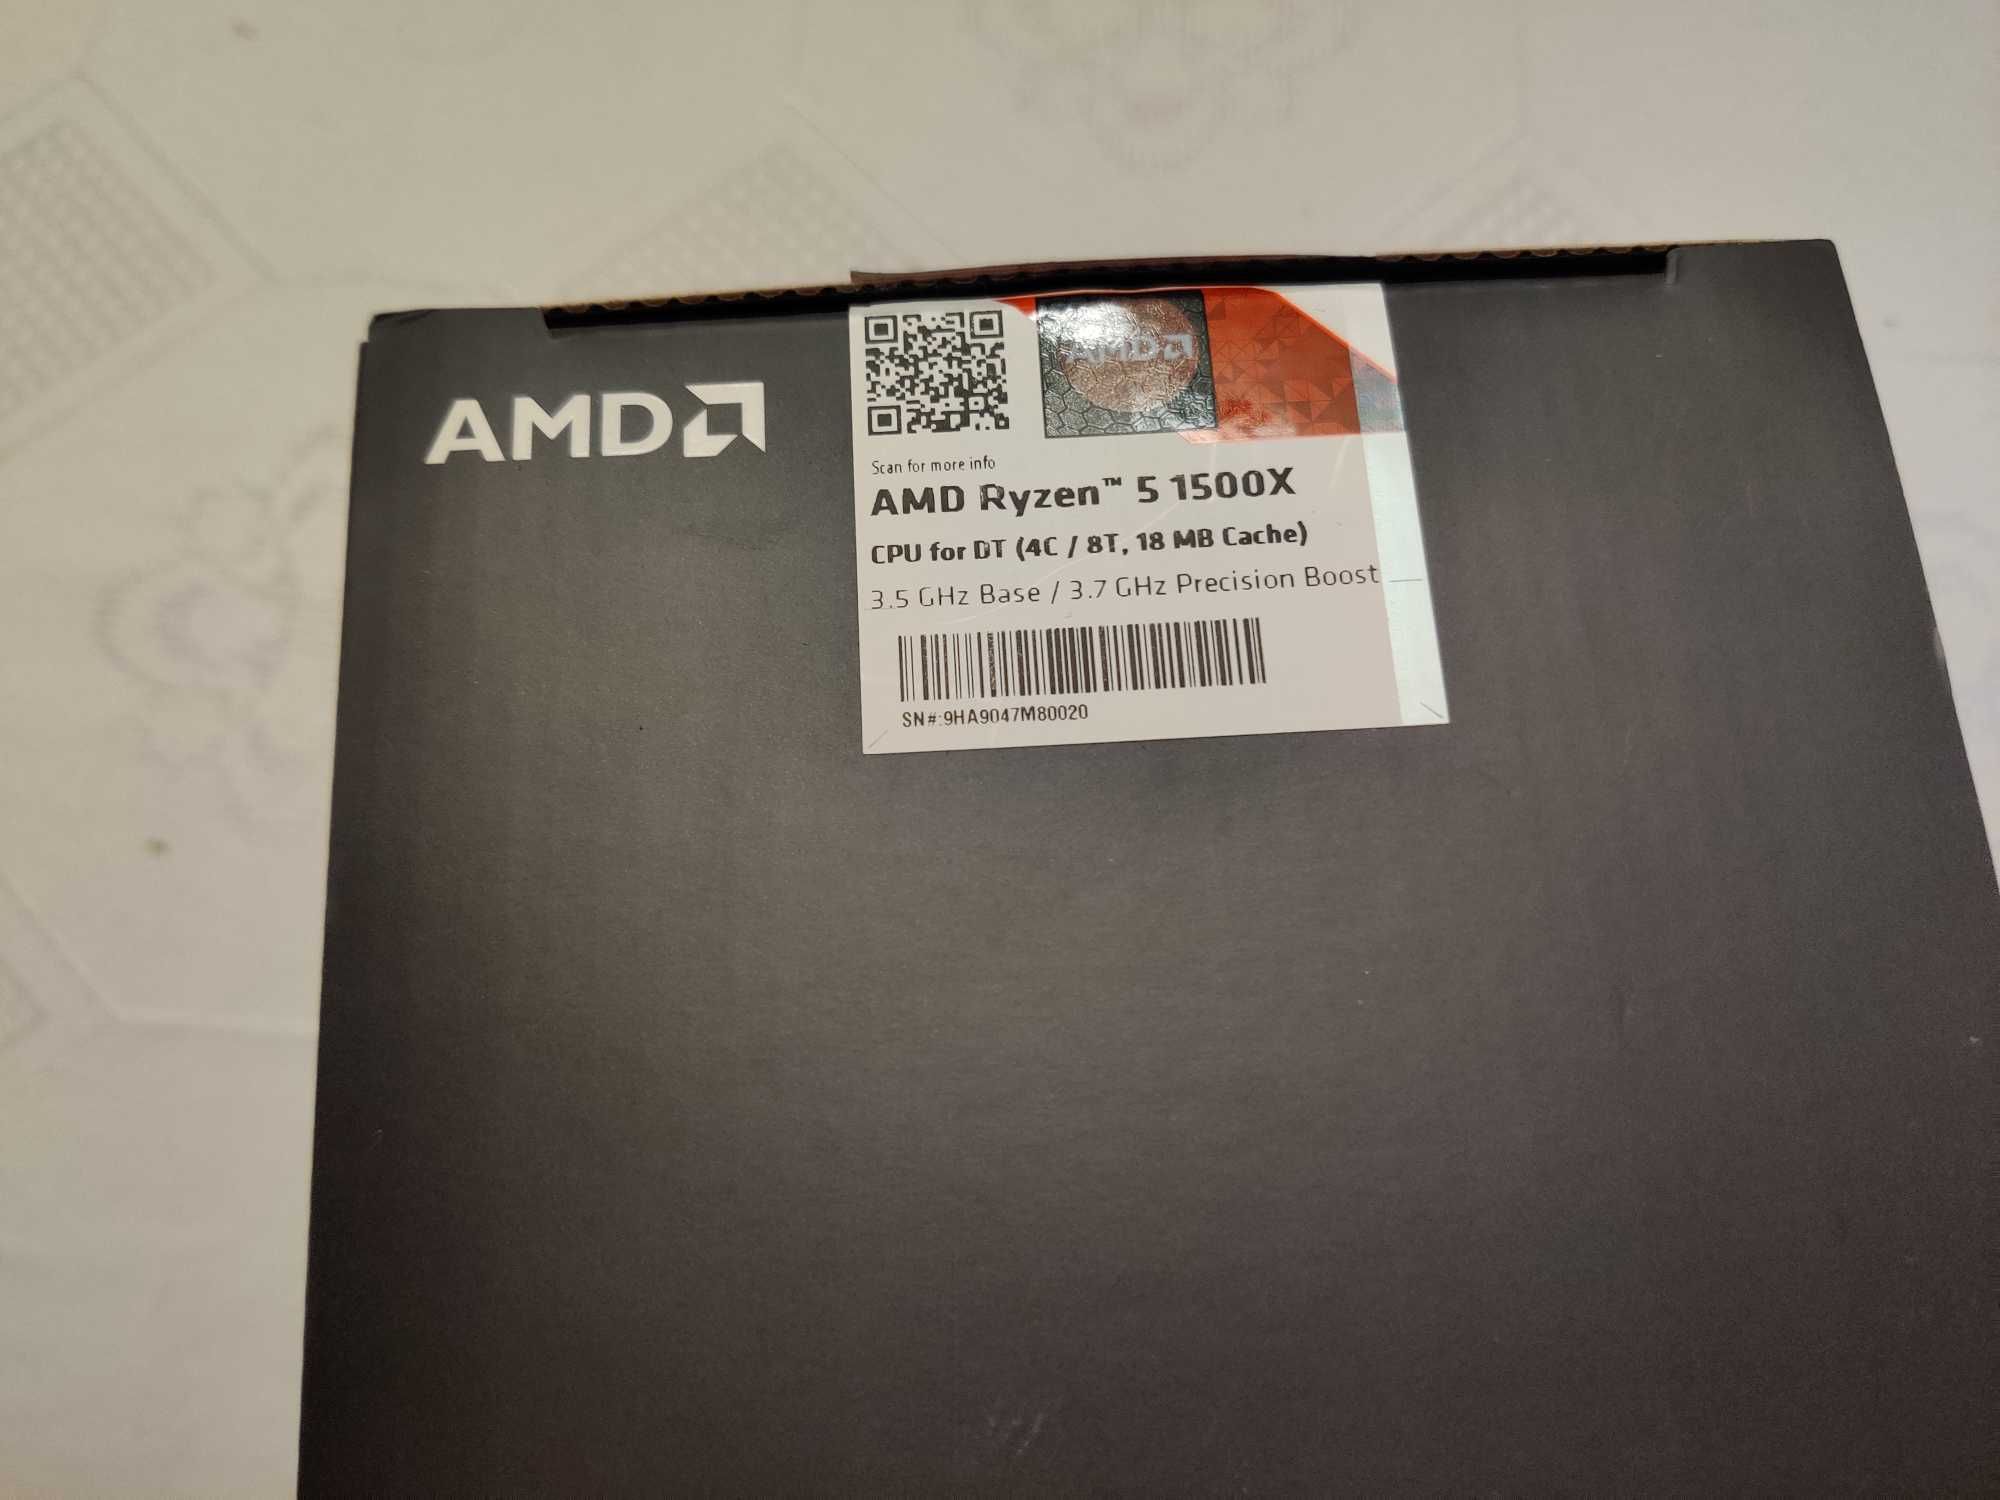 AMD Ryzen 1500x - CPU + Cooler